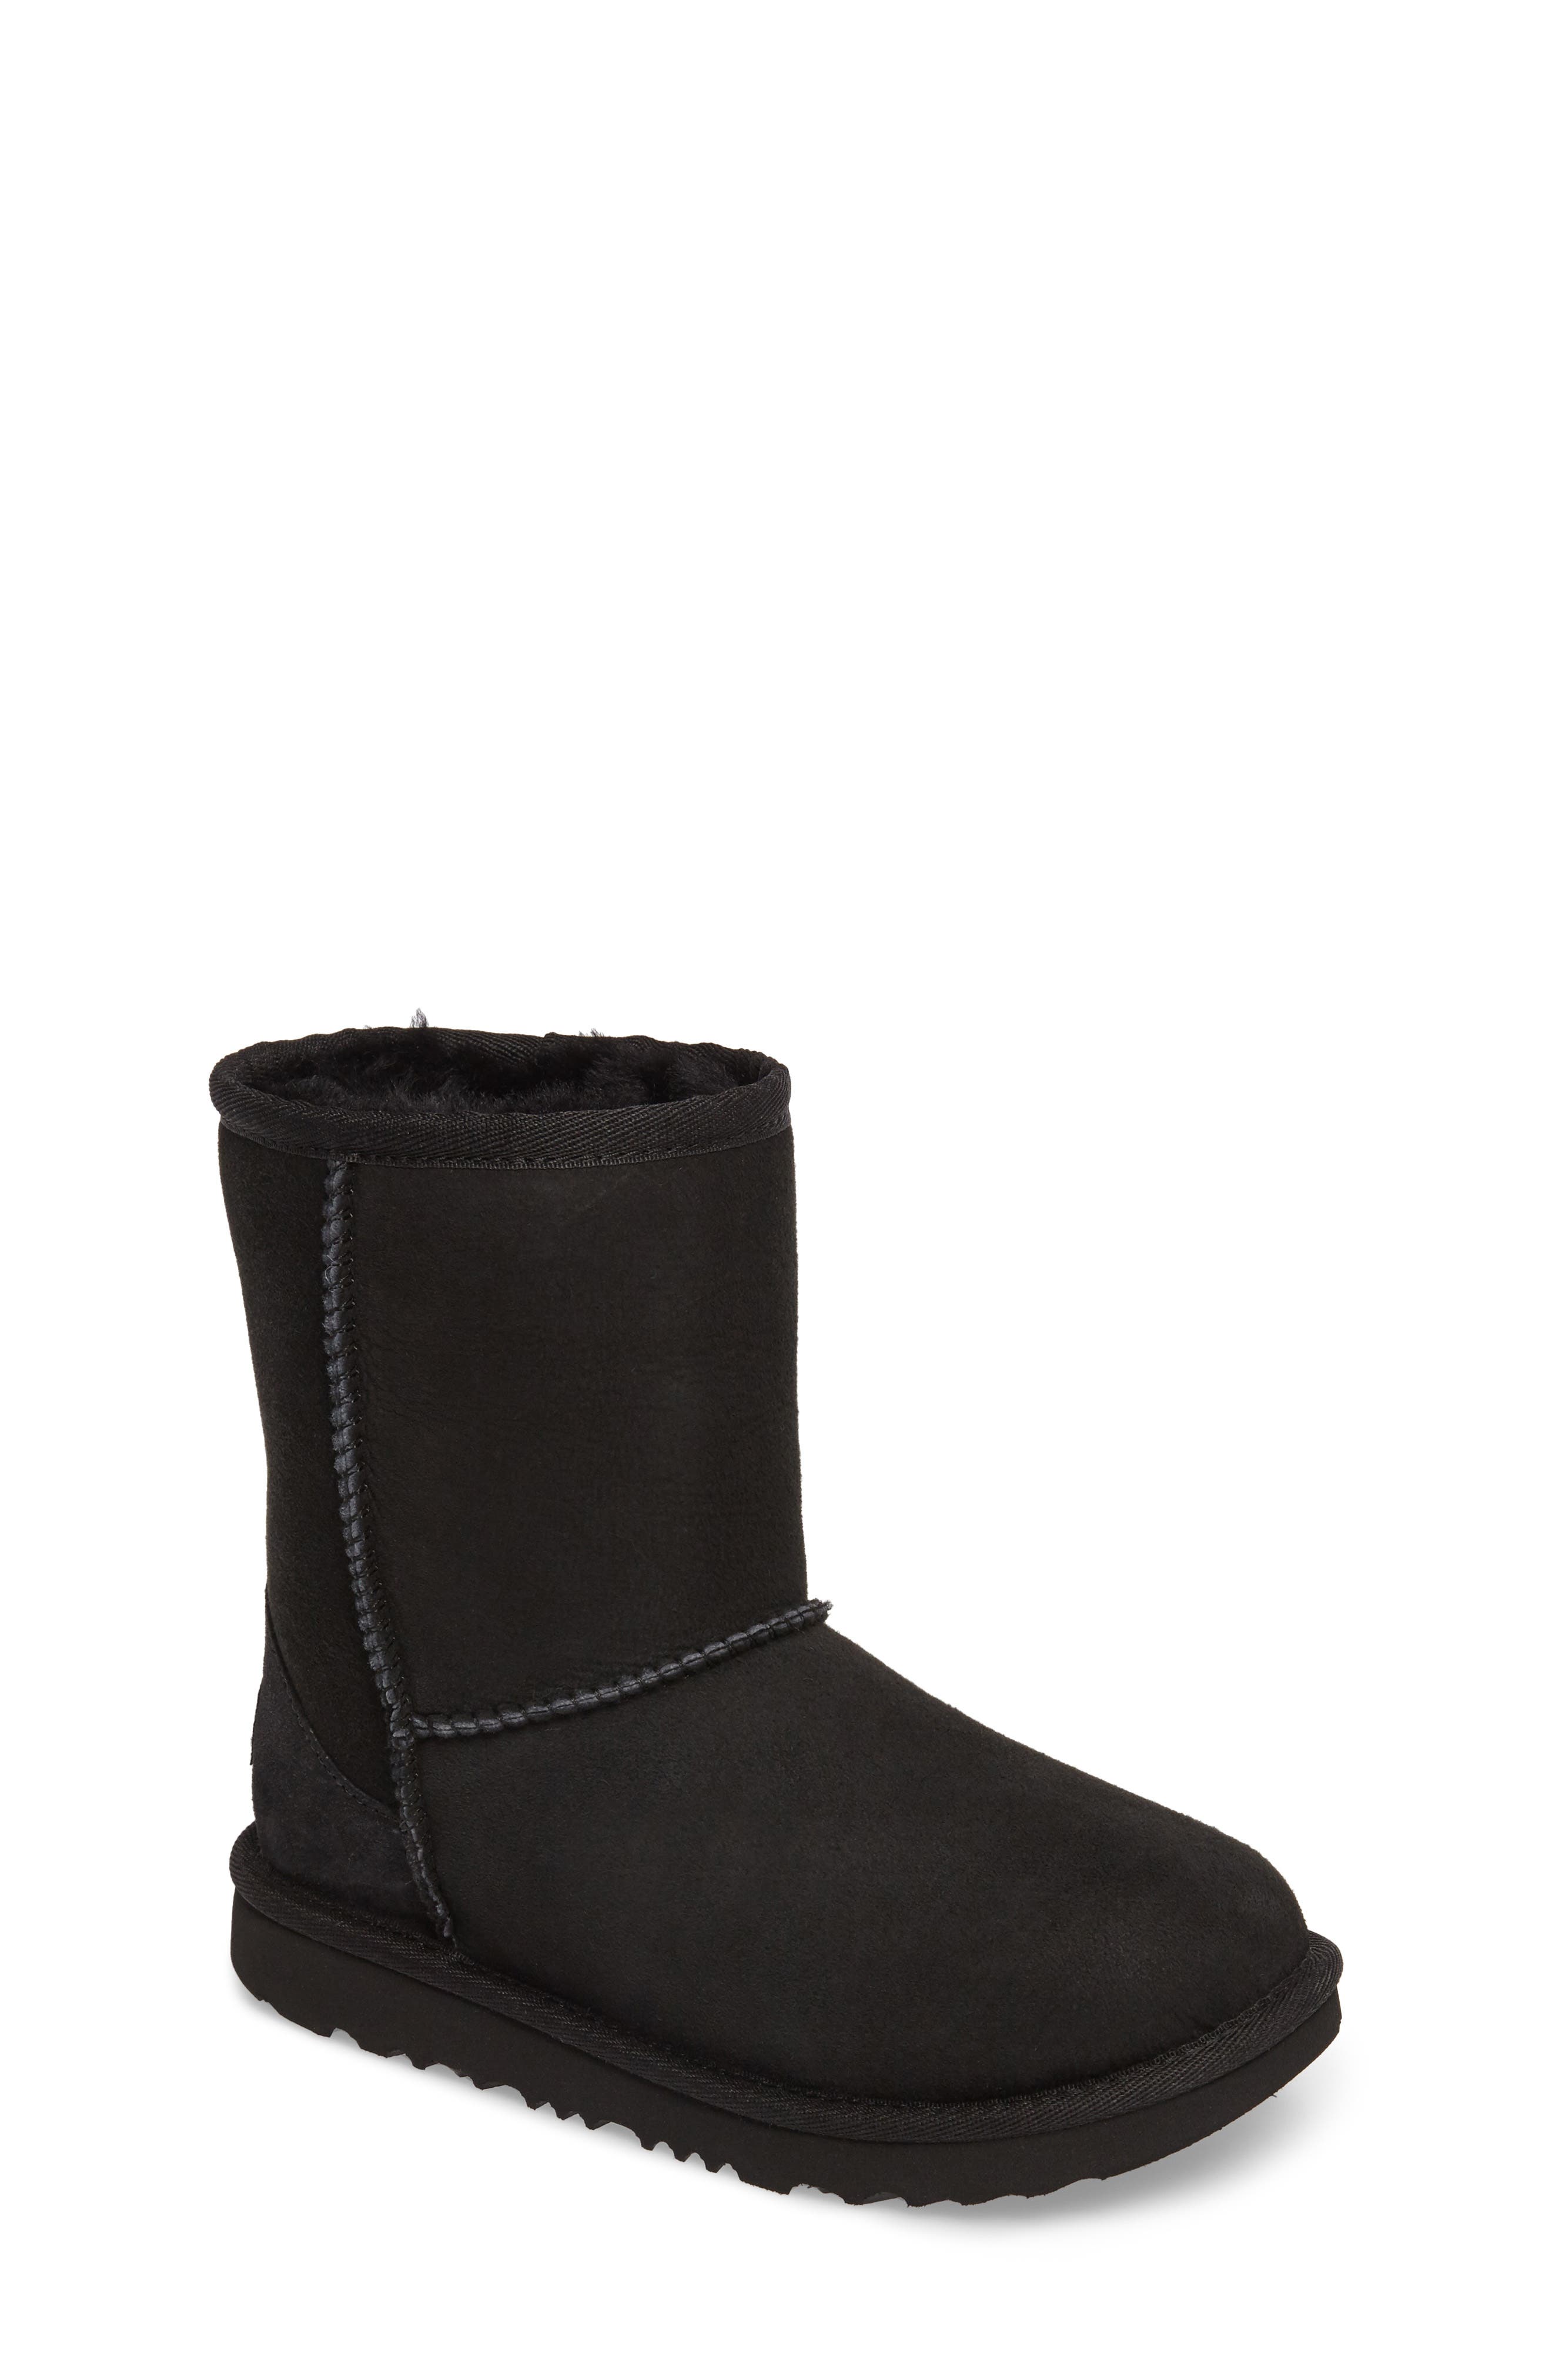 Girls' Black Boots \u0026 Booties | Nordstrom